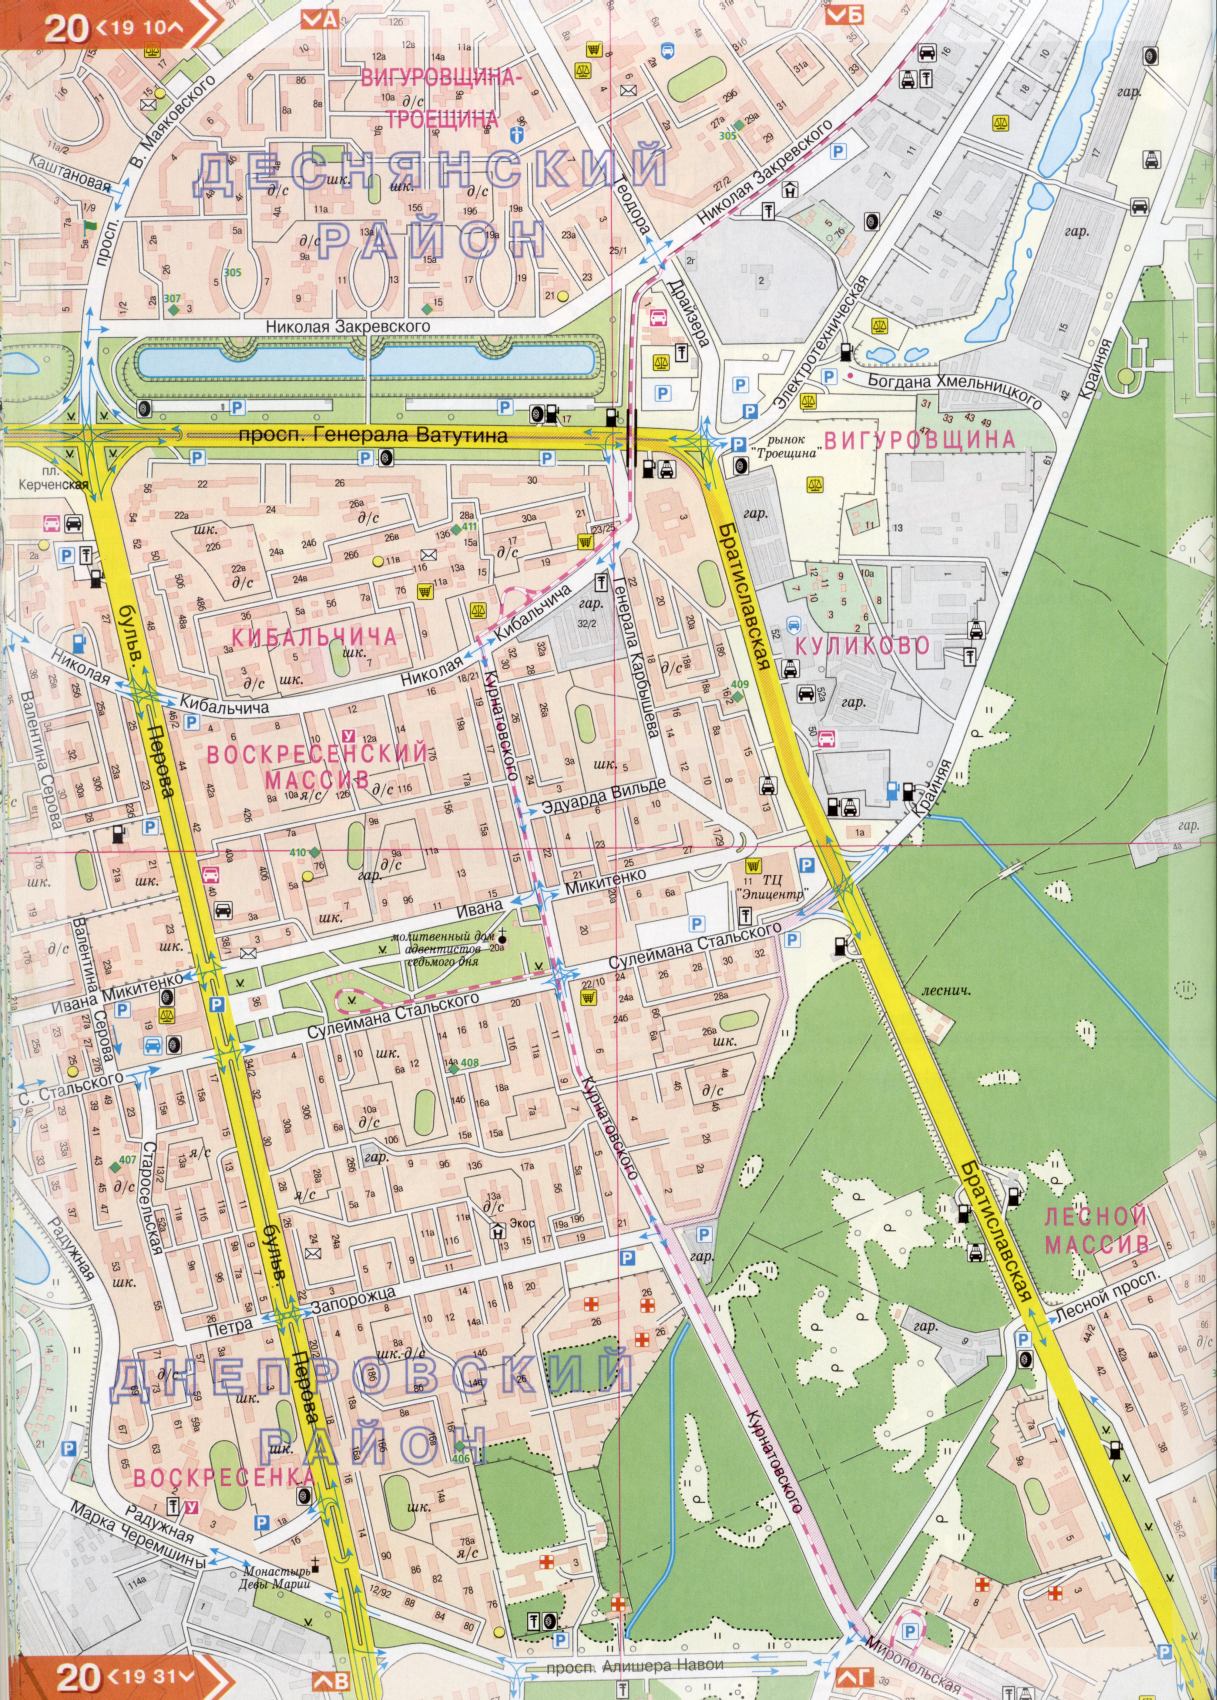 Карта Киева подробная в 1см=150м на 45 листах. Карта г.Киев из атласа автомобильных дорог. Скачать бесплатно подробную карту , H1